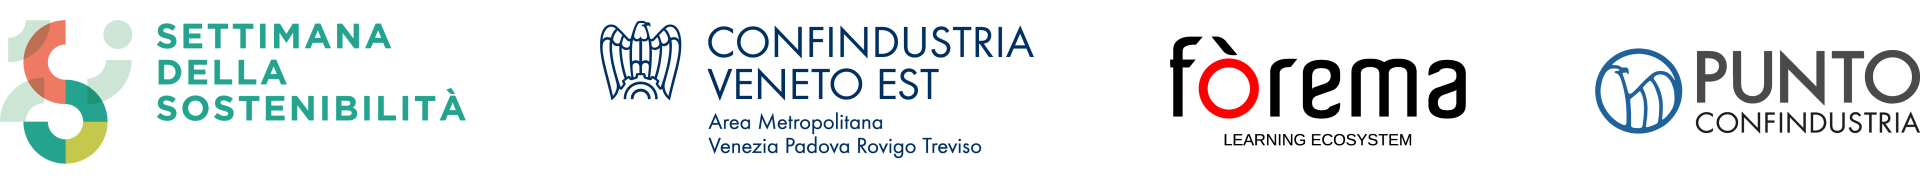 loghi Confindustria Veneto Est, Settimana della sostenibilità, Fòrema e Punto Confindustria